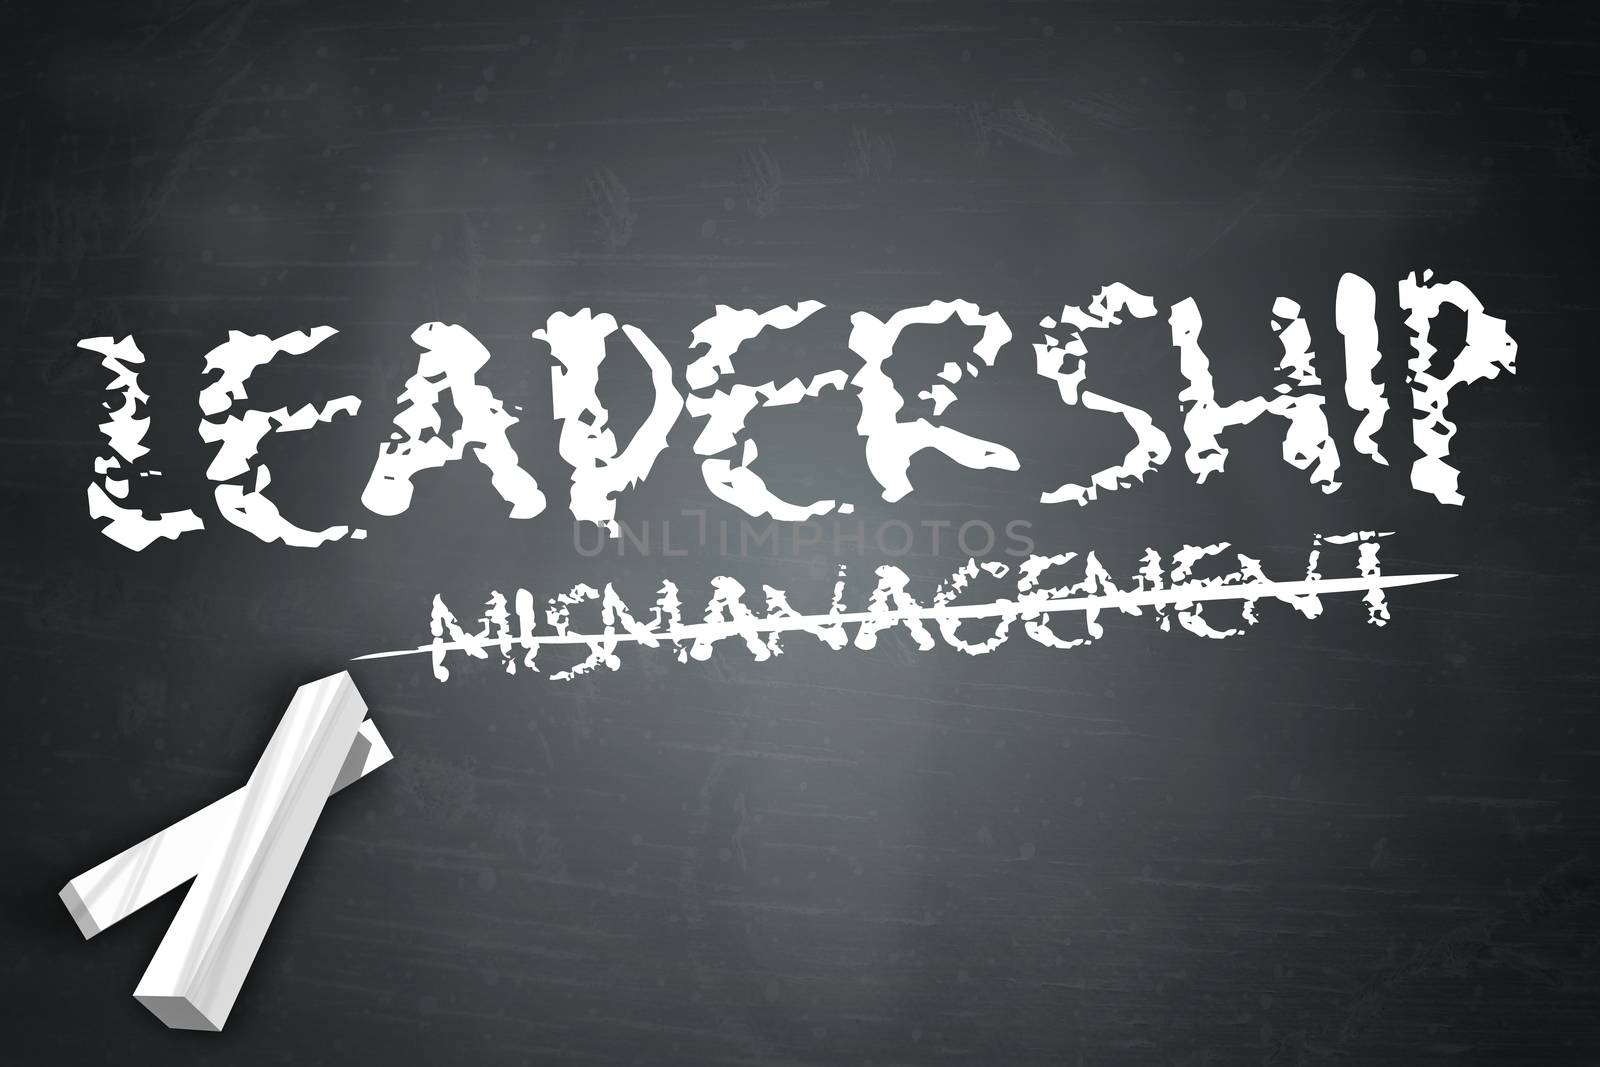 Blackboard "Leadership" by mindscanner